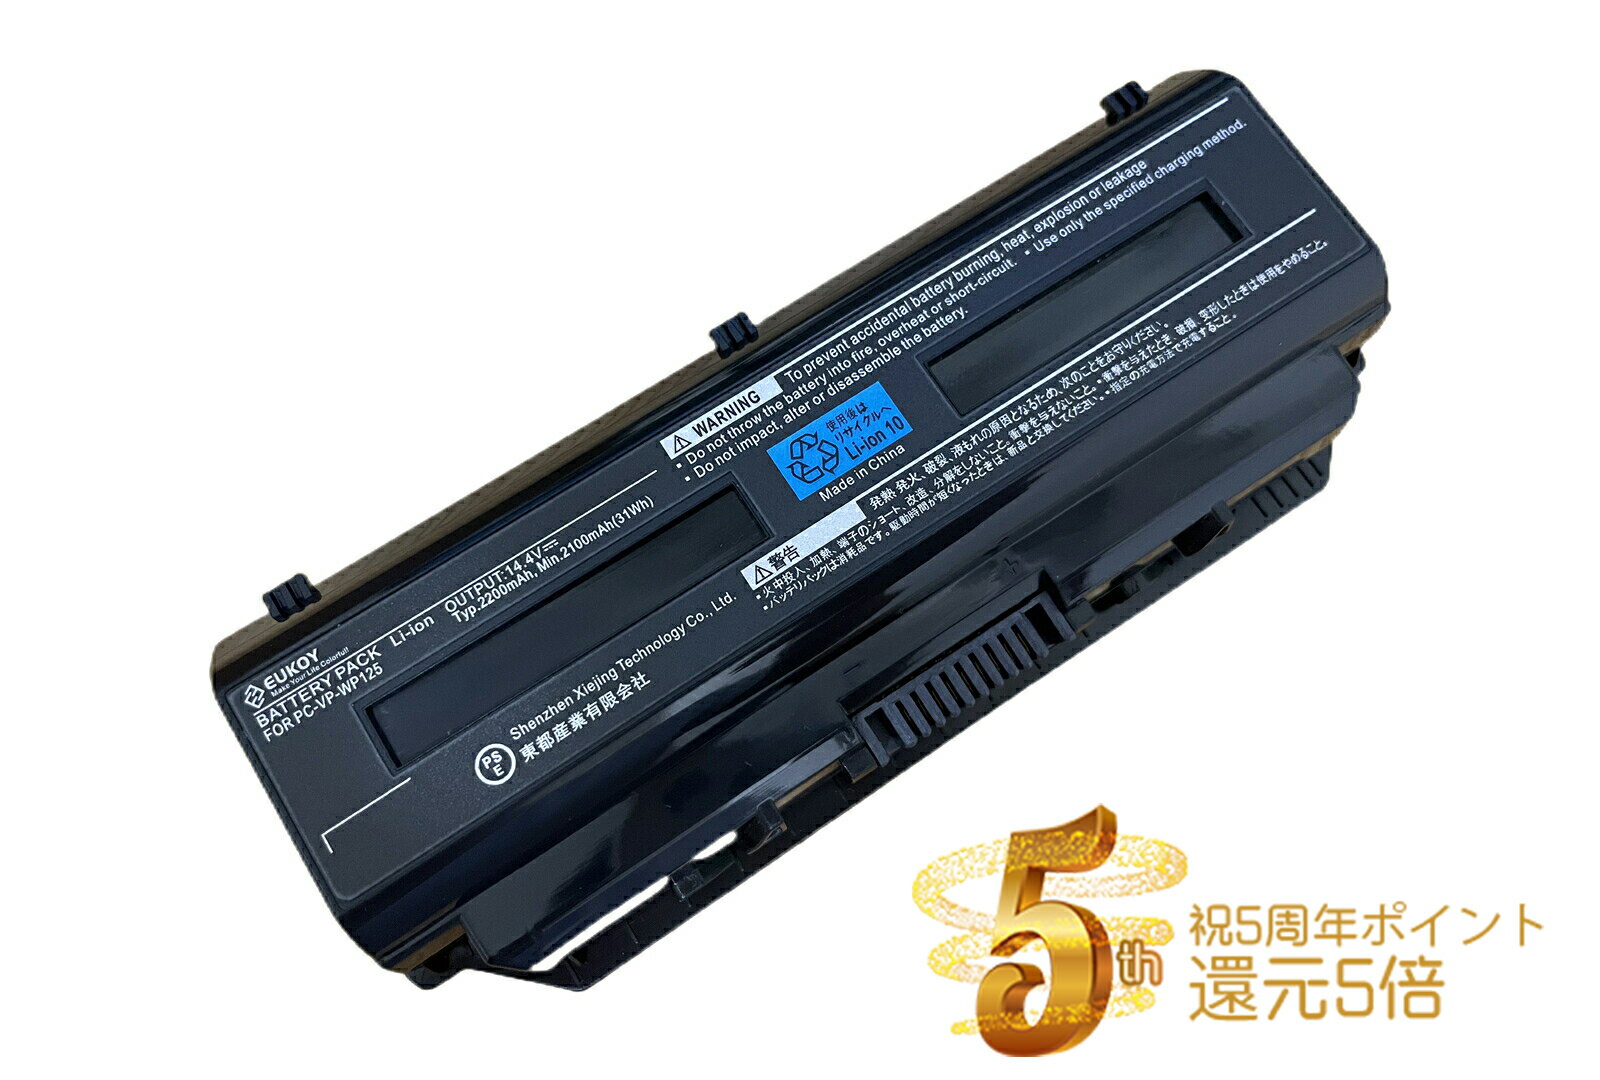 【純正】Eraser n40-45 14.4V 41Wh lenovo ノート PC ノートパソコン 純正 交換バッテリー